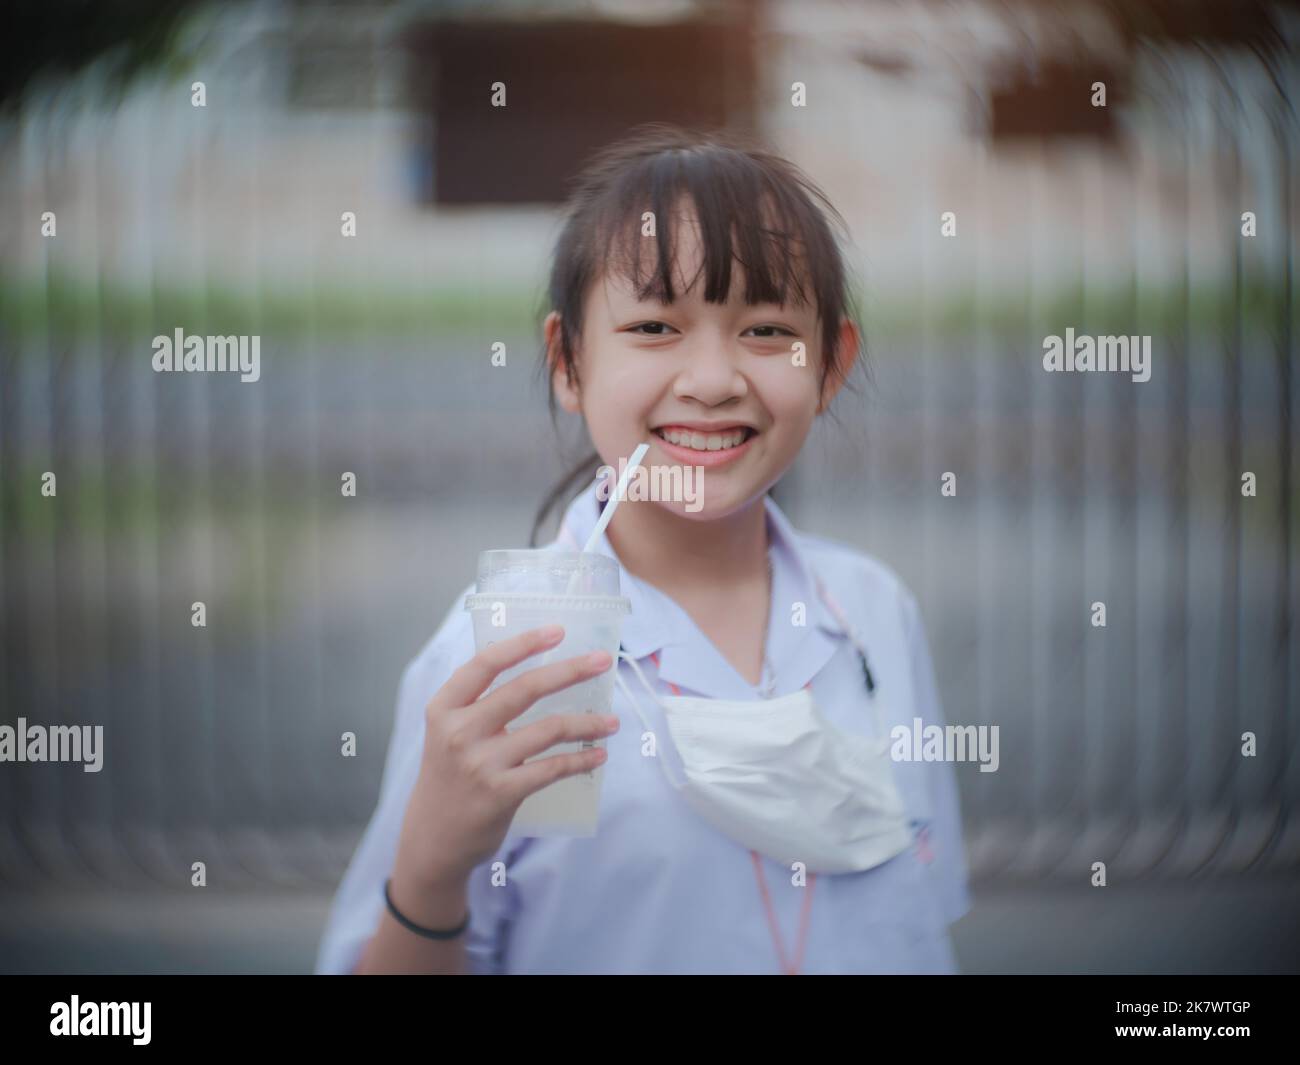 La estudiante sonrió y se rió alegremente después de beber agua y terminar la escuela por la noche Foto de stock